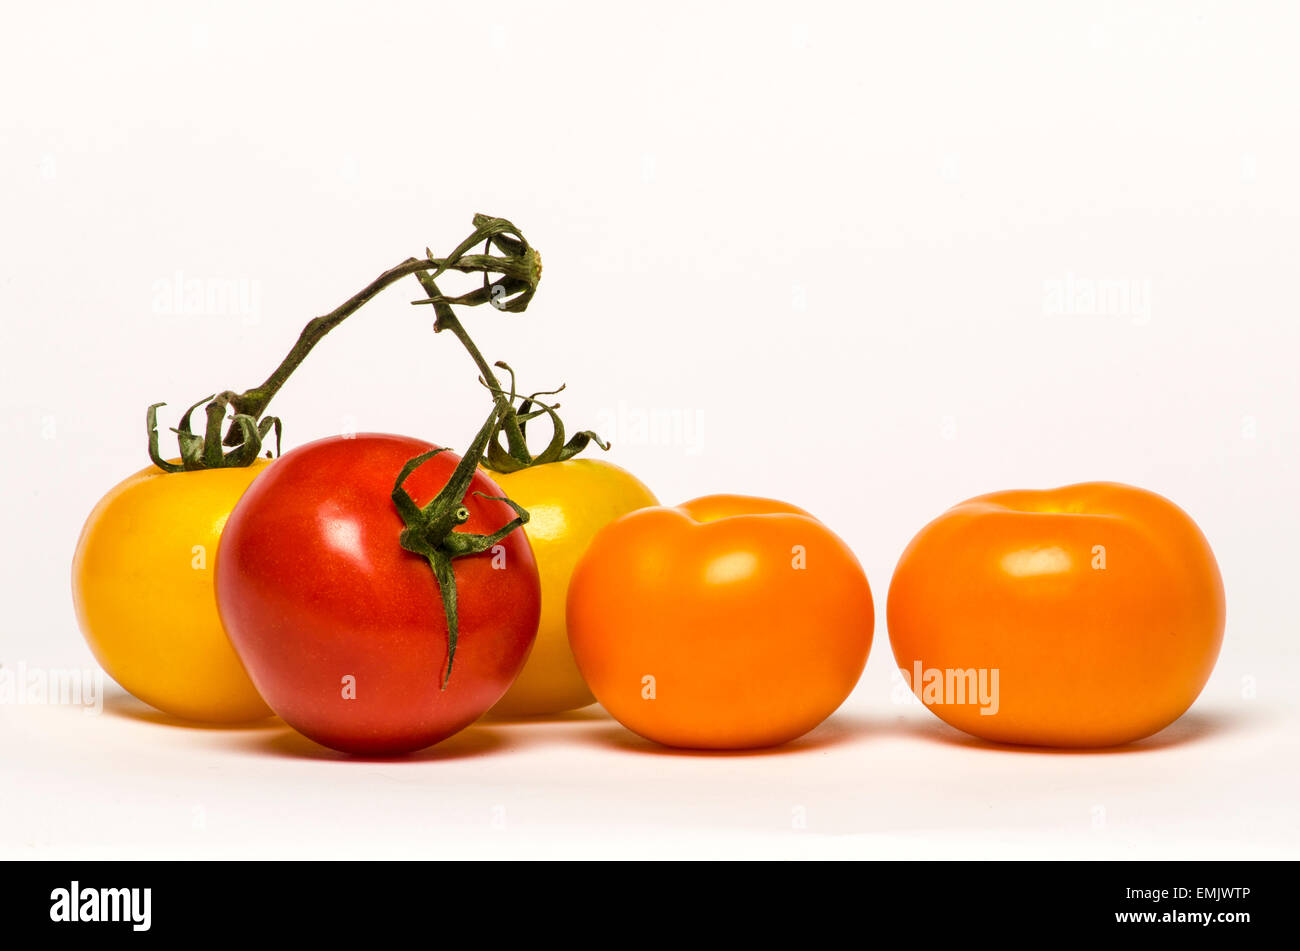 Los tomates de diferentes colores (naranja, amarillo y rojo) se apilan uno al lado del otro en un fondo blanco. Foto de stock